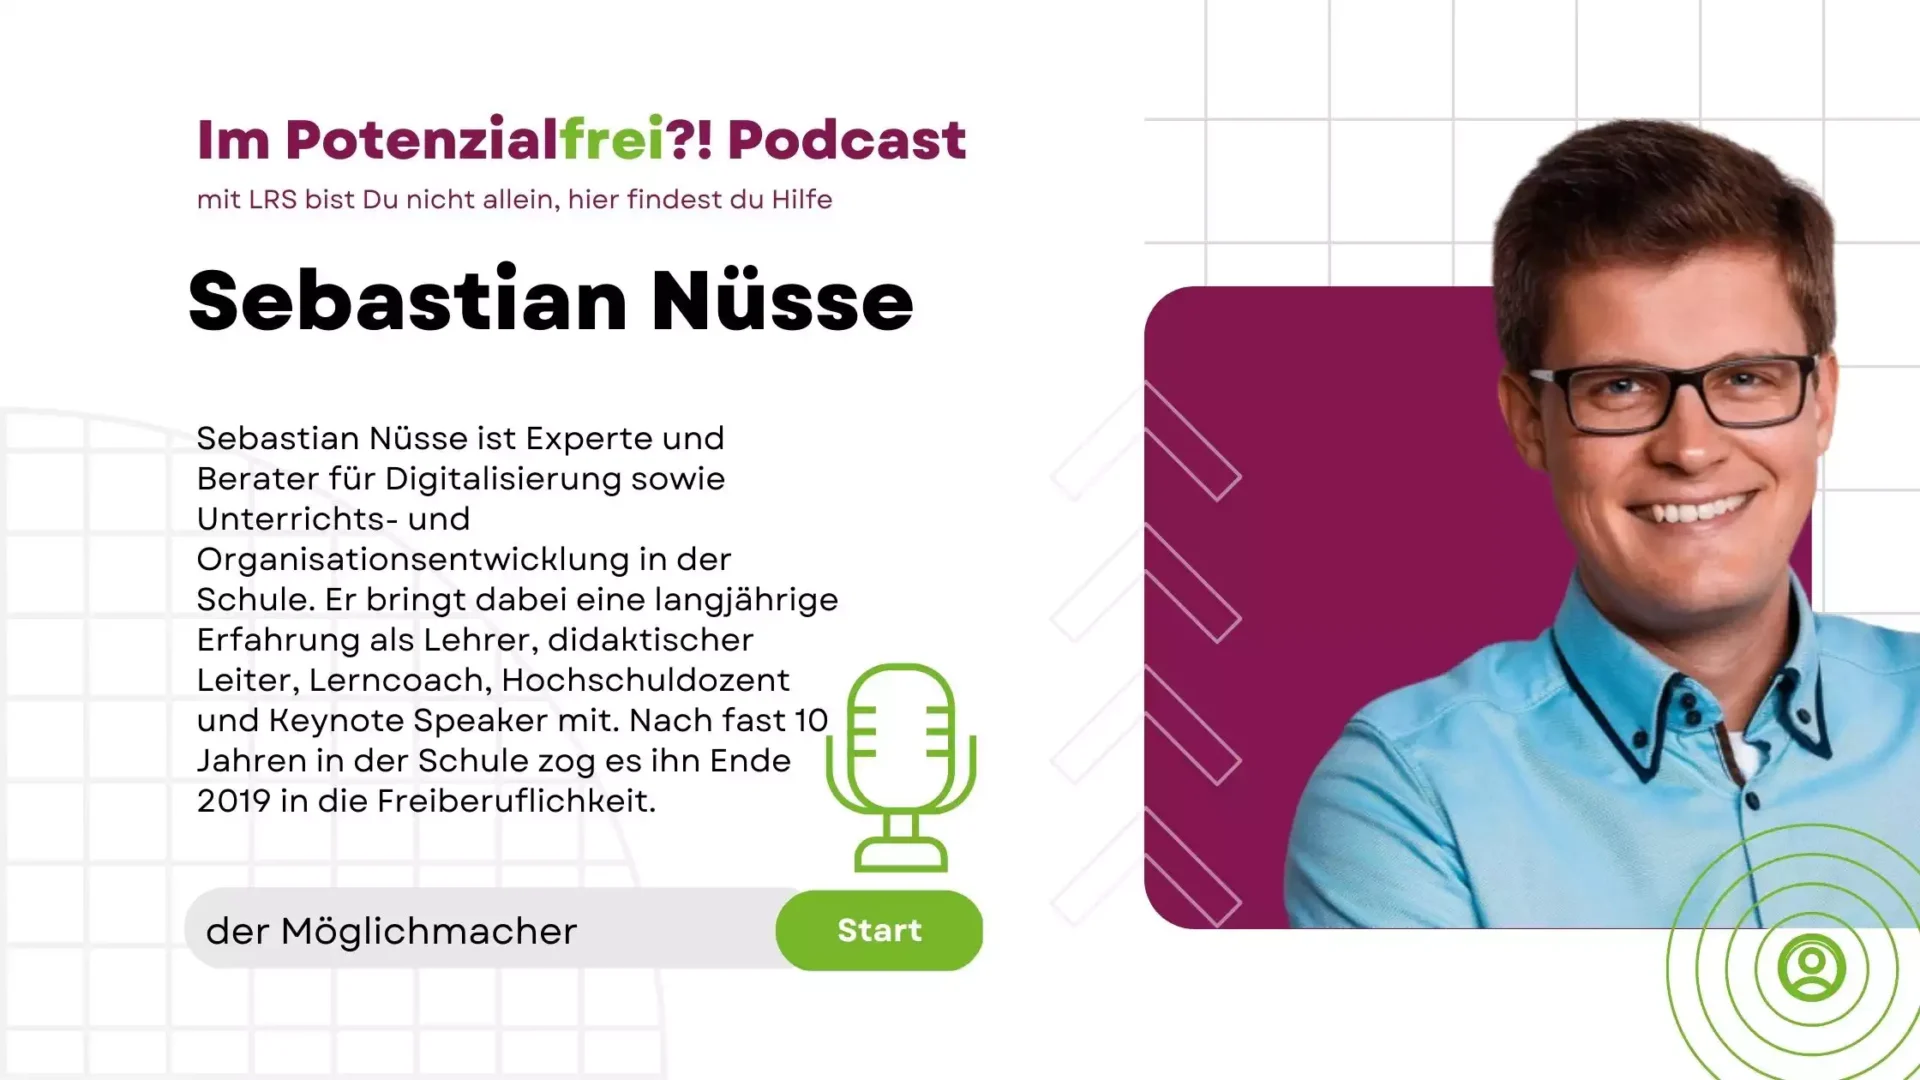 Sebastian Nüsse der Möglichmacher im Potenzialfrei Podcast